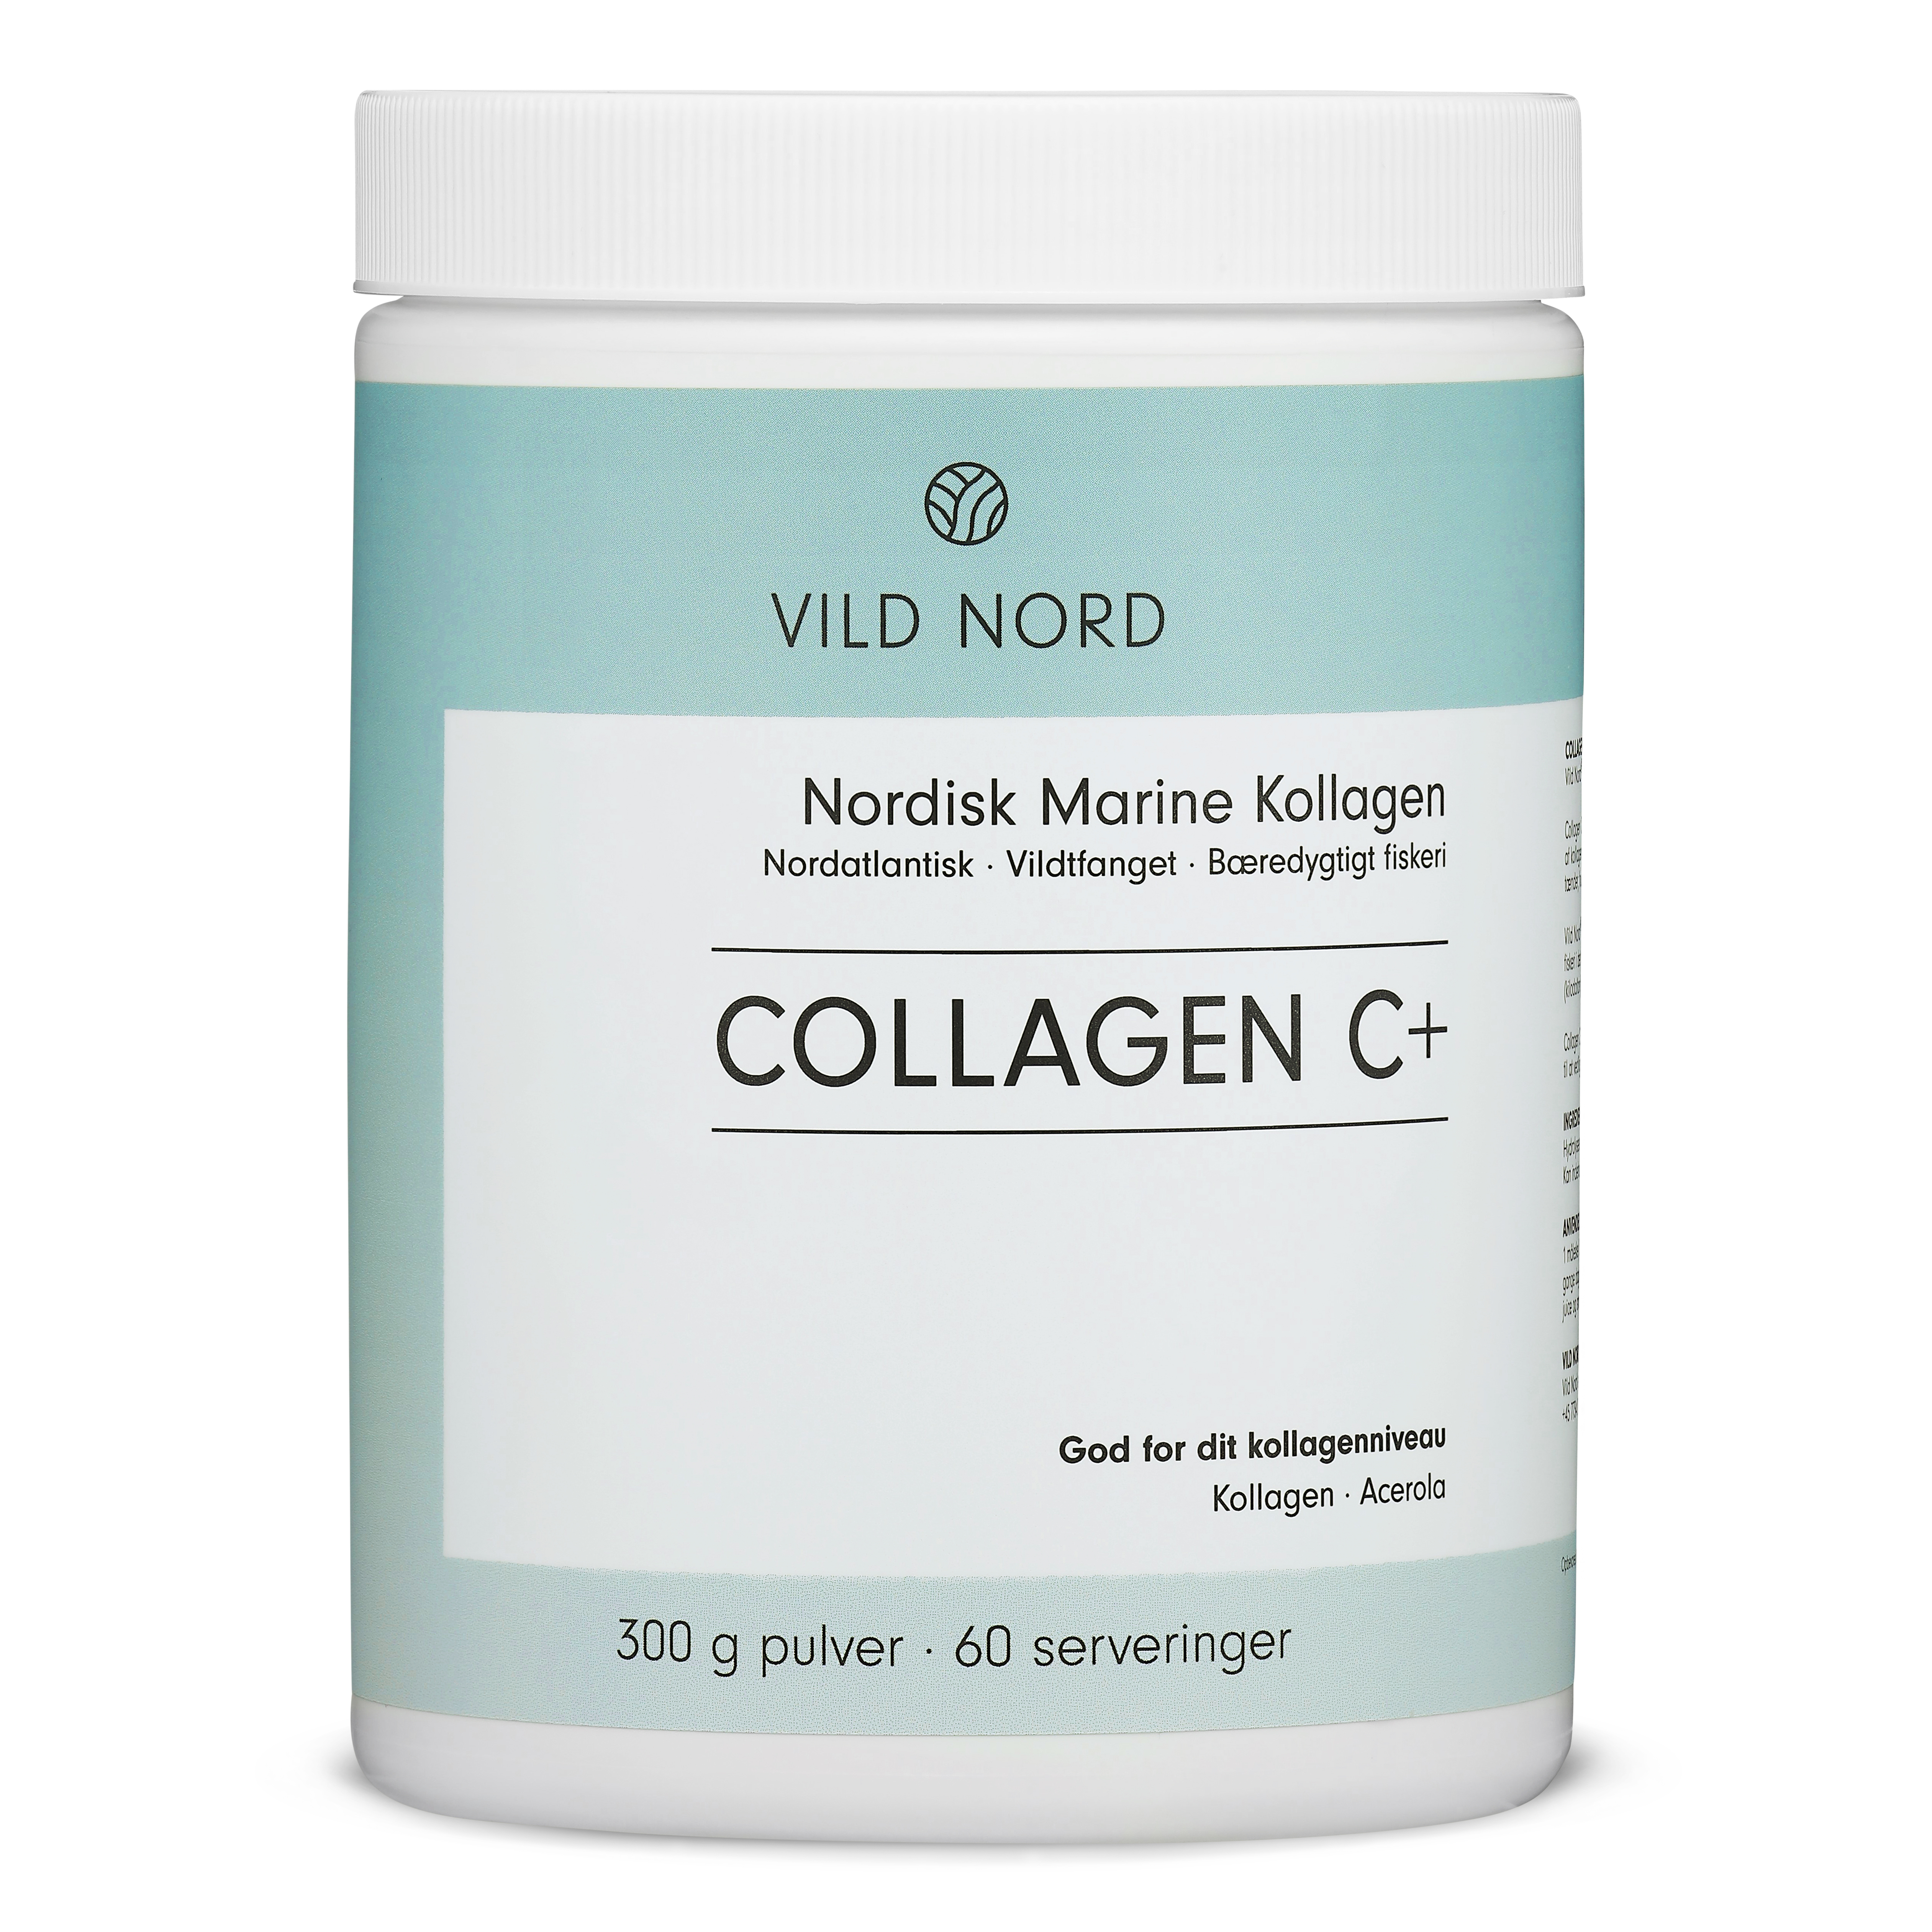  Collagen C+